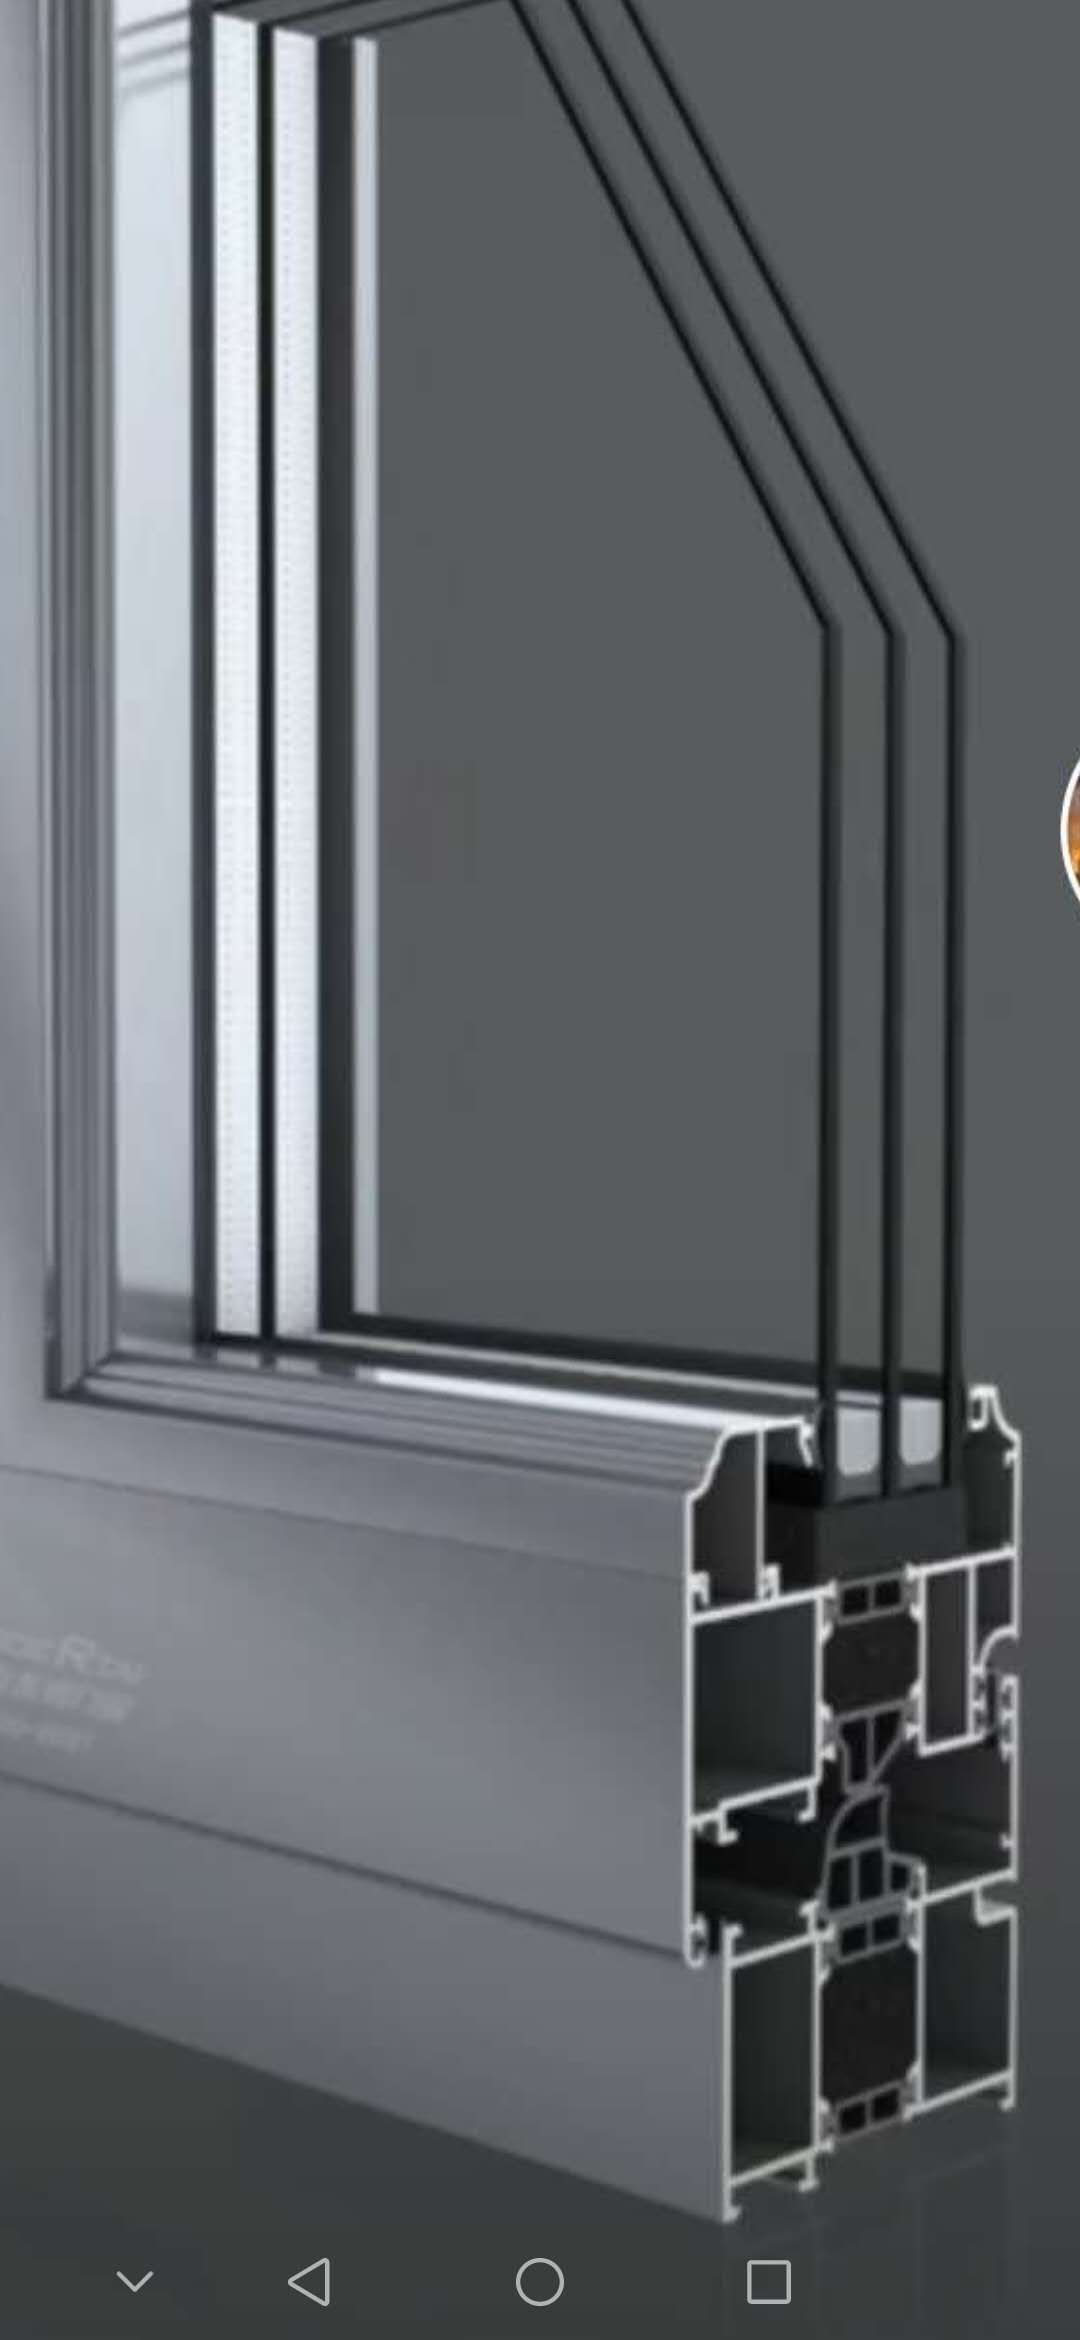 唐山市兴发铝材门窗有限公司,是一家从事断桥铝门窗,系统门窗,塑钢